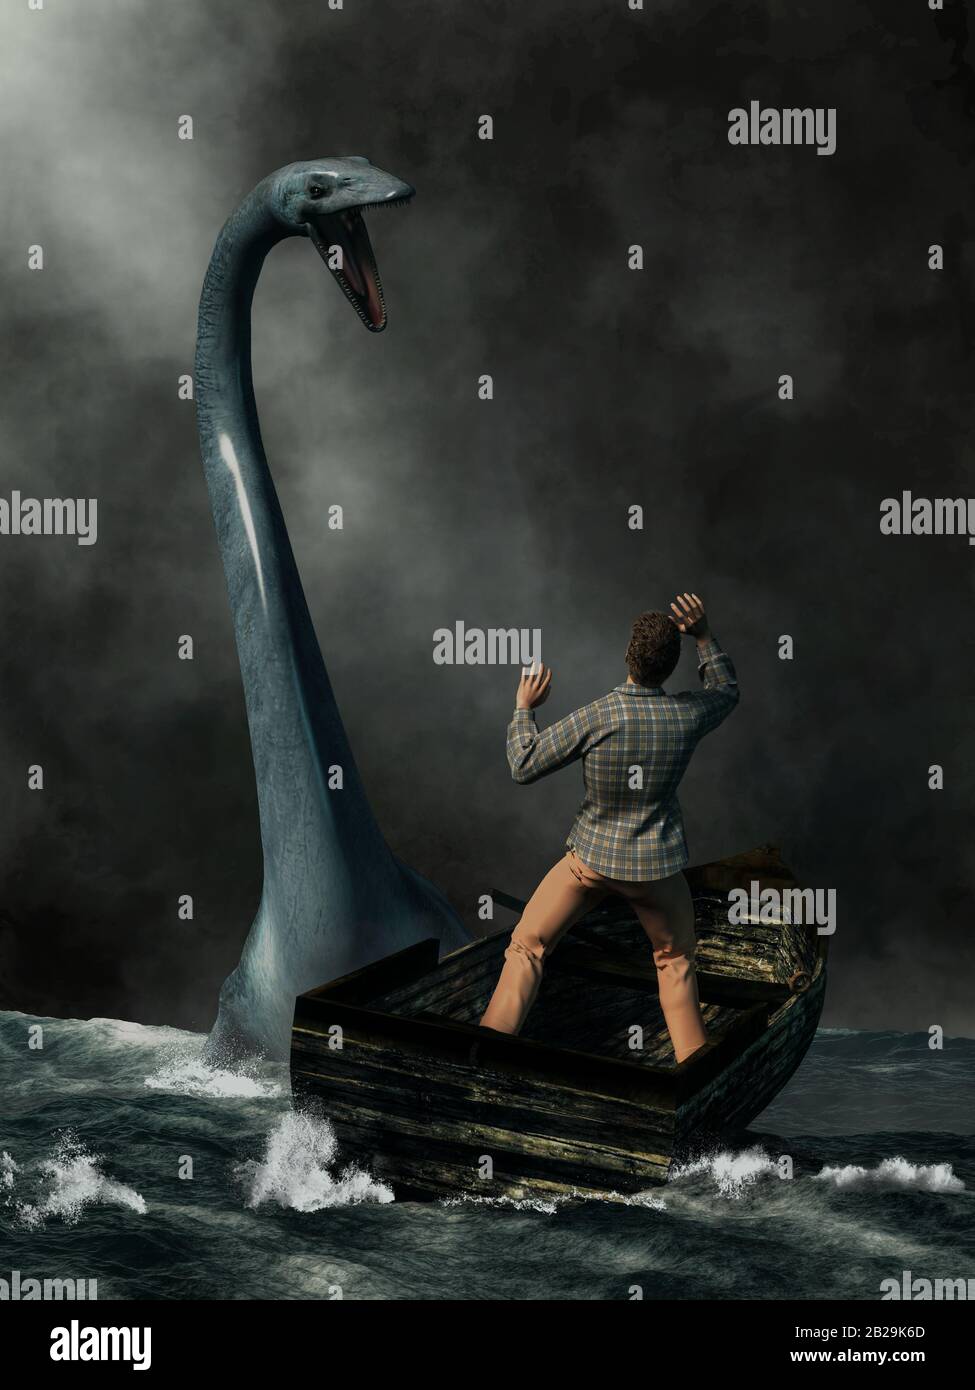 Inmitten von dunklem Nebel und rauem Wasser trifft ein Mann in einem alten Boot auf das berühmteste Kryptid, das Monster von Loch Ness. Stockfoto